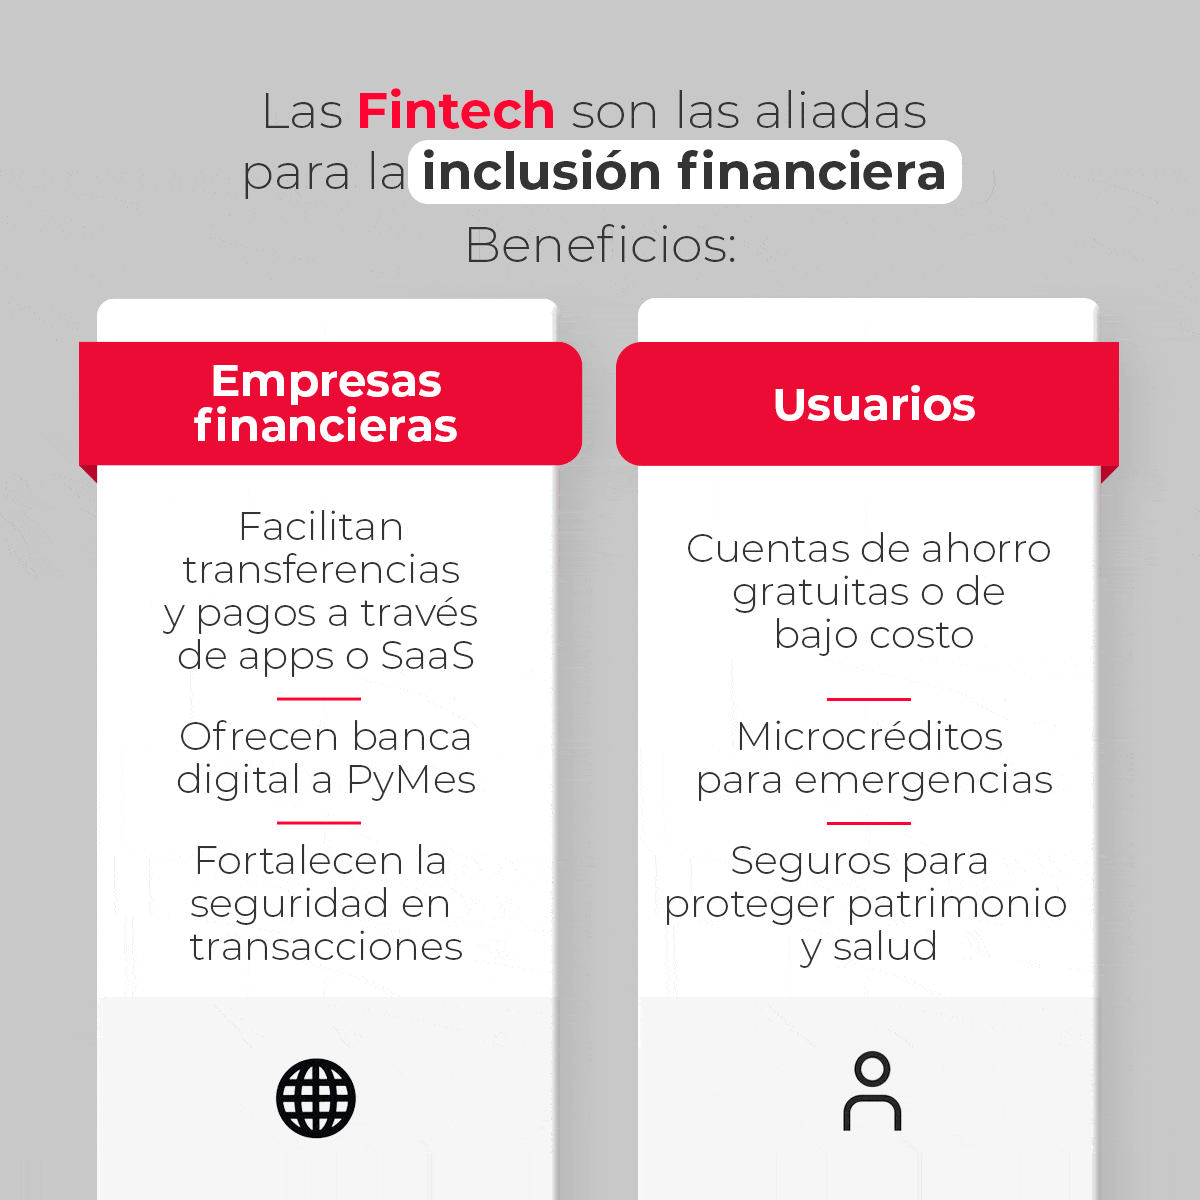 Las Fintech son las aliadas para la inclusión financiera en Latinoamérica, ya que tienen beneficios tanto para empresas del ramo como para usuarios finales. Por ejemplo, facilitan transferencias y pagos a través de apps o SaaS, ofrecen banca digital a las PyMes y seguros para proteger, entre otros, el patrimonio y la salud. 